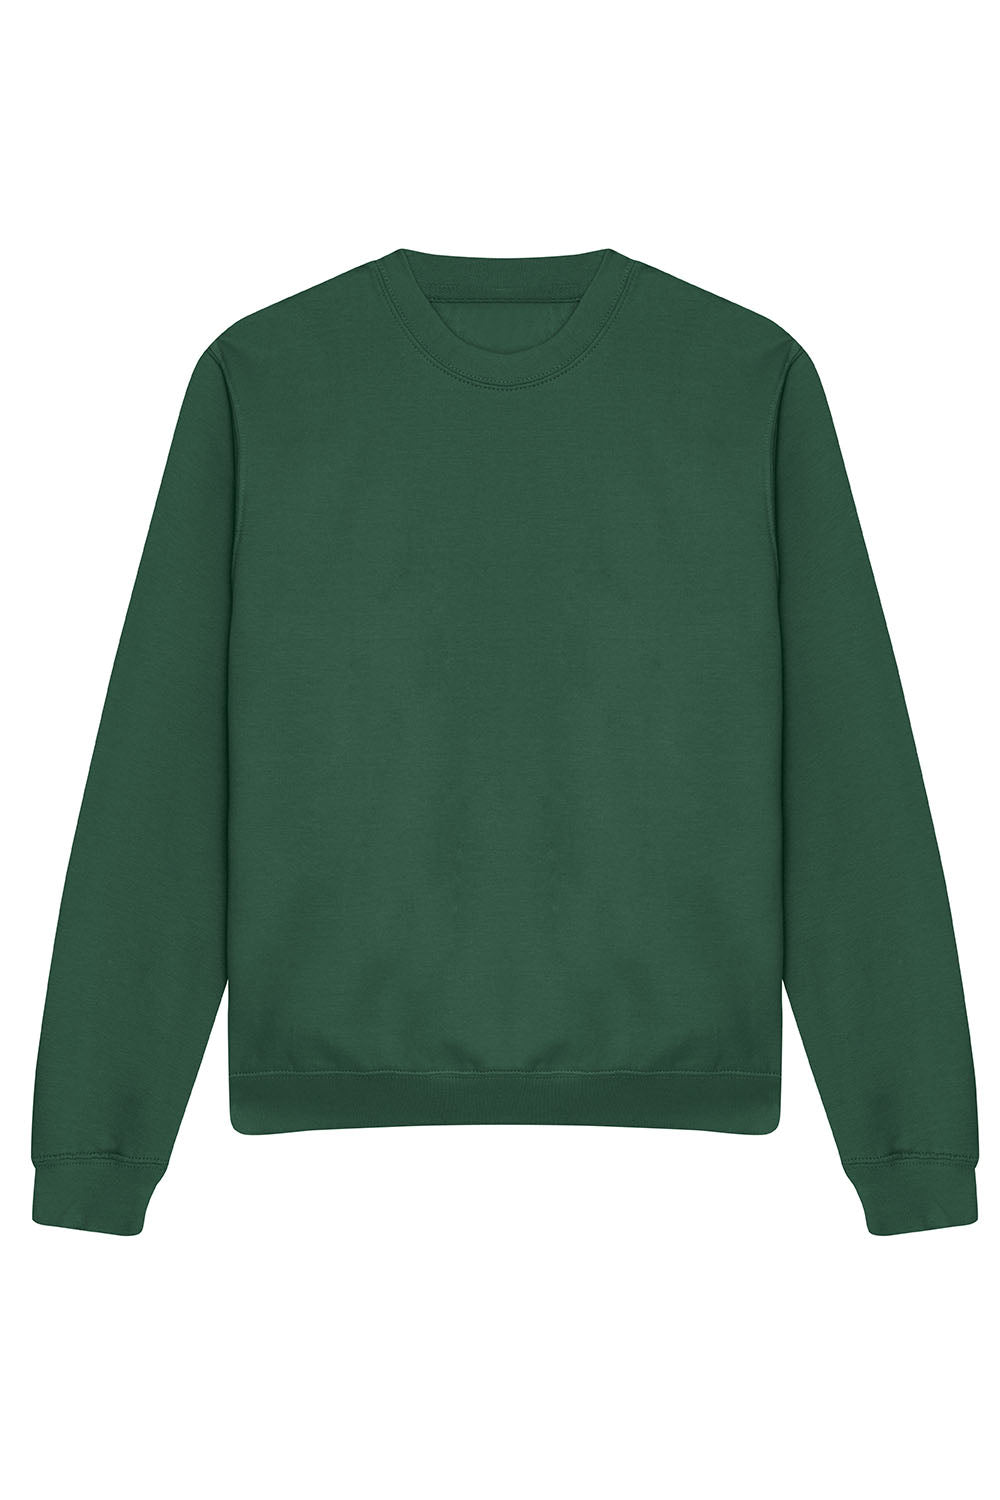 Plain Sweatshirt In Bottle Green (Single)